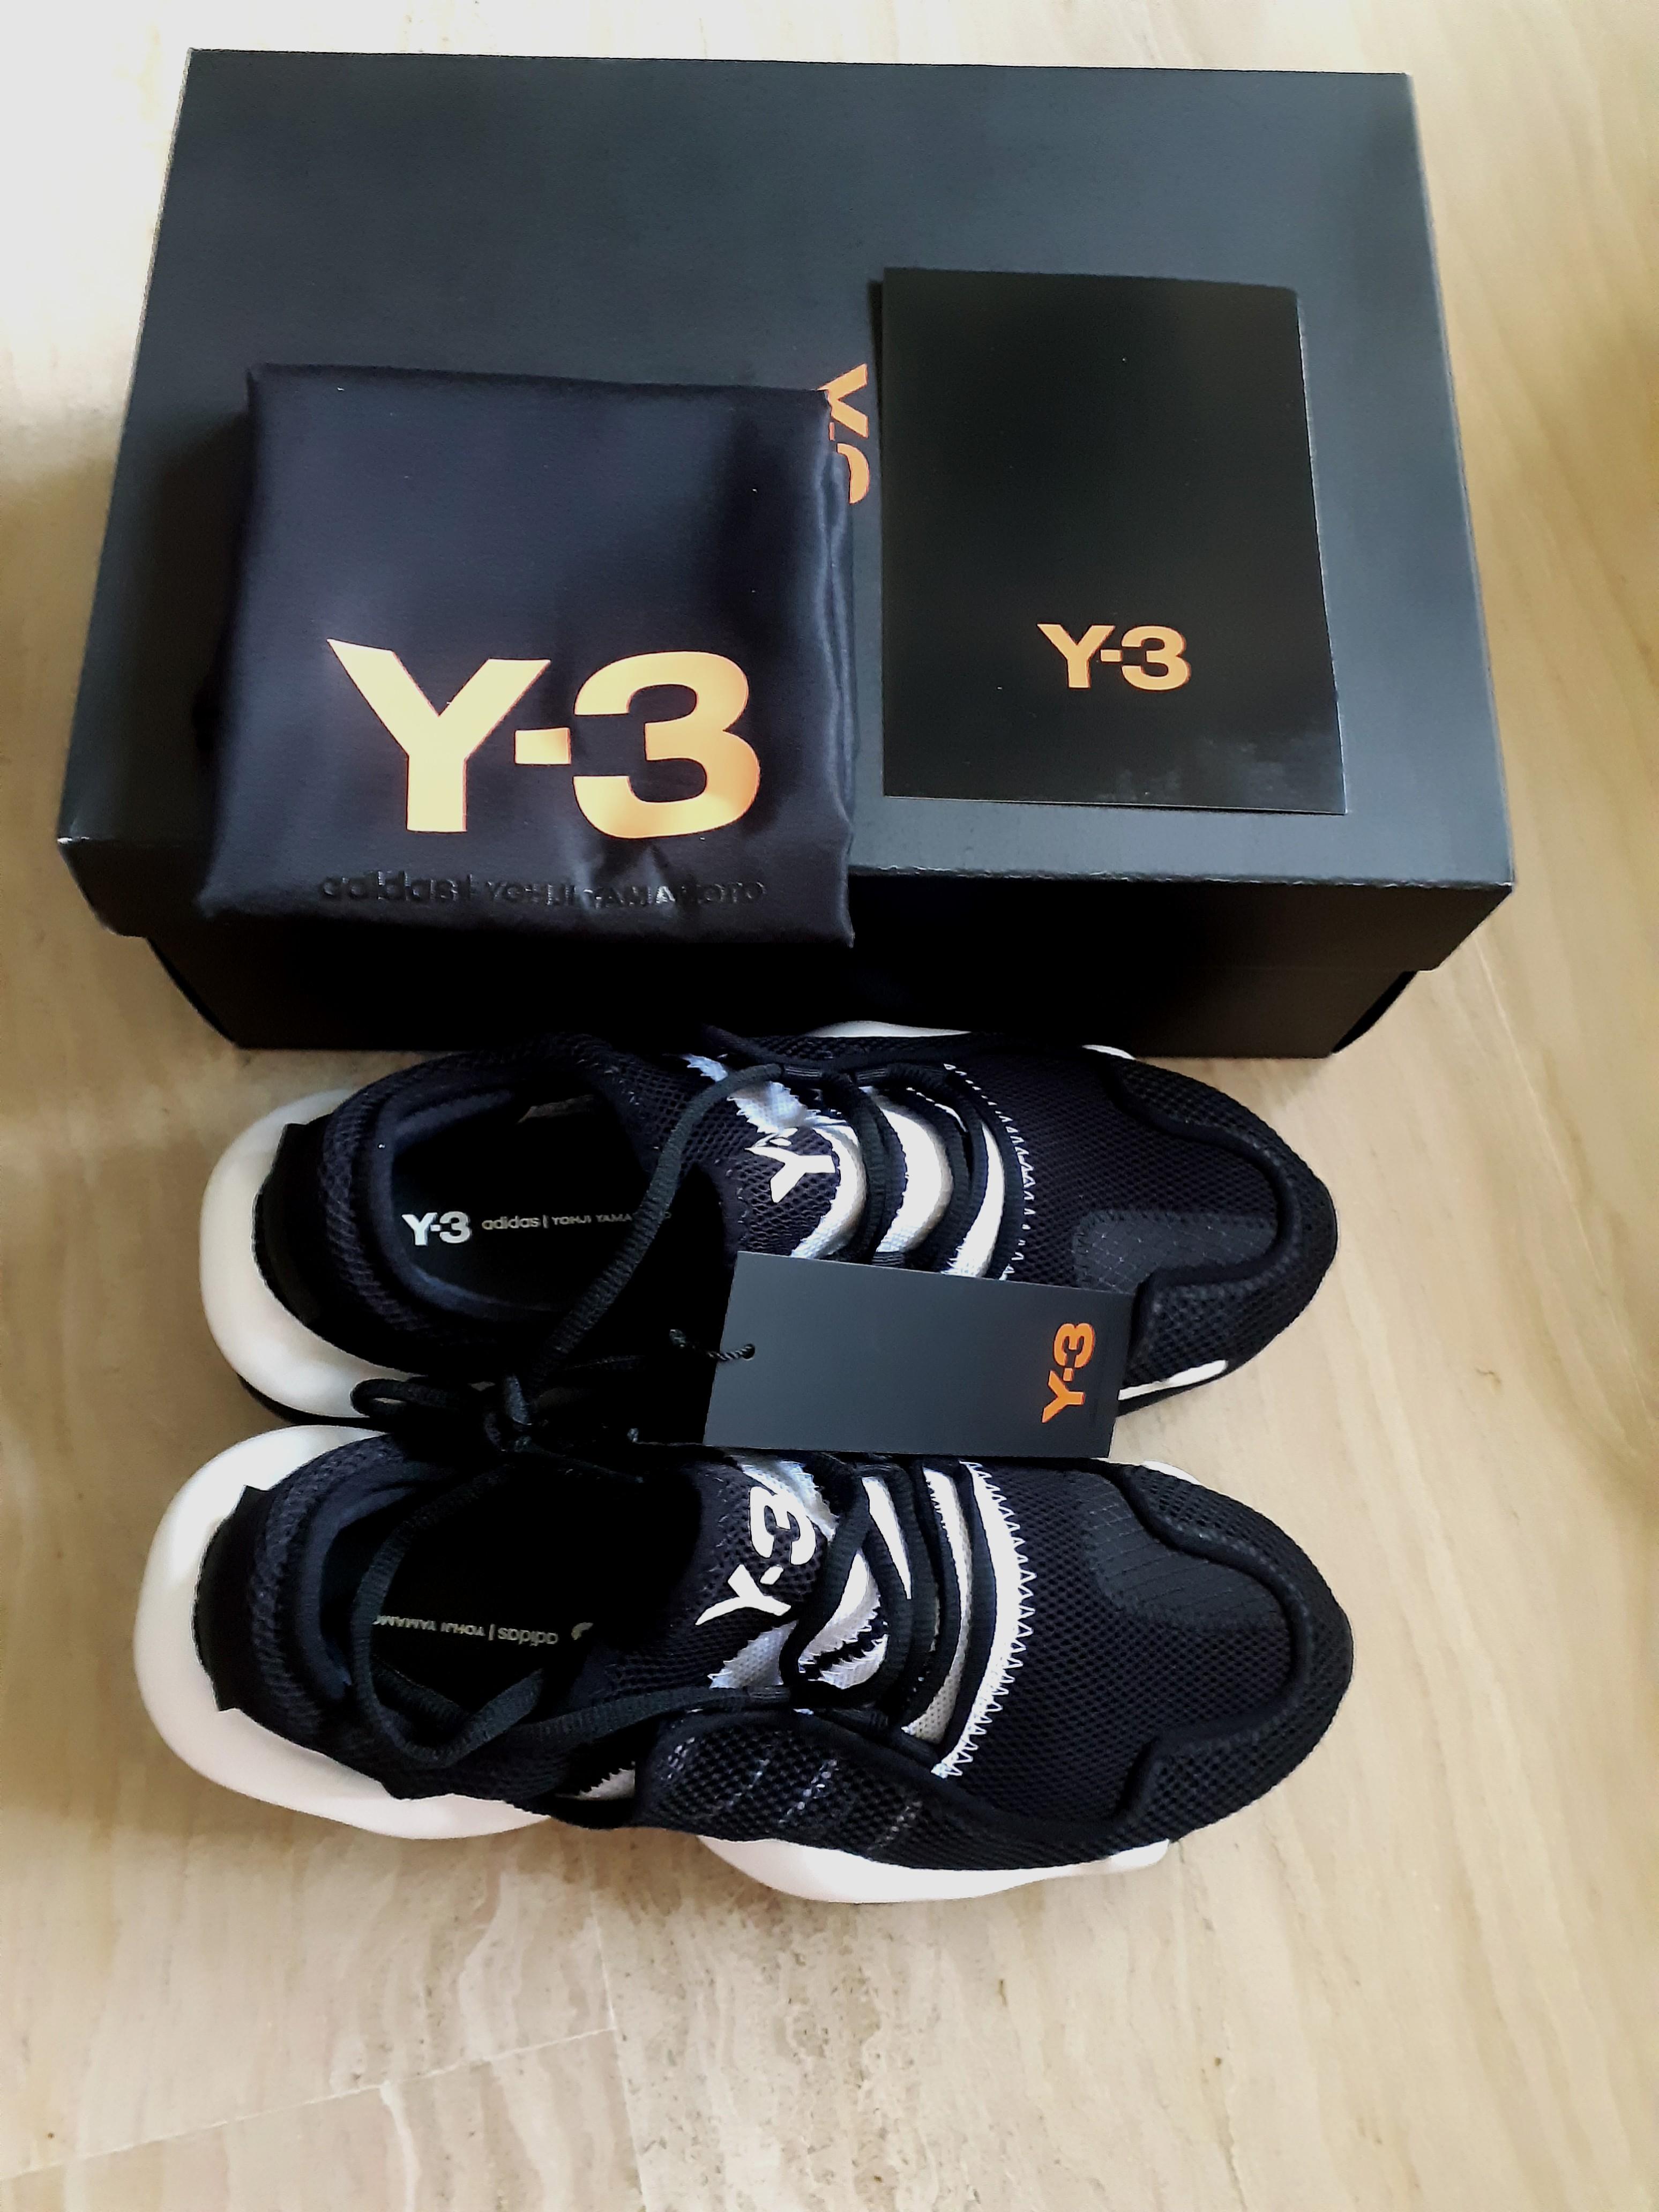 y3 shoe